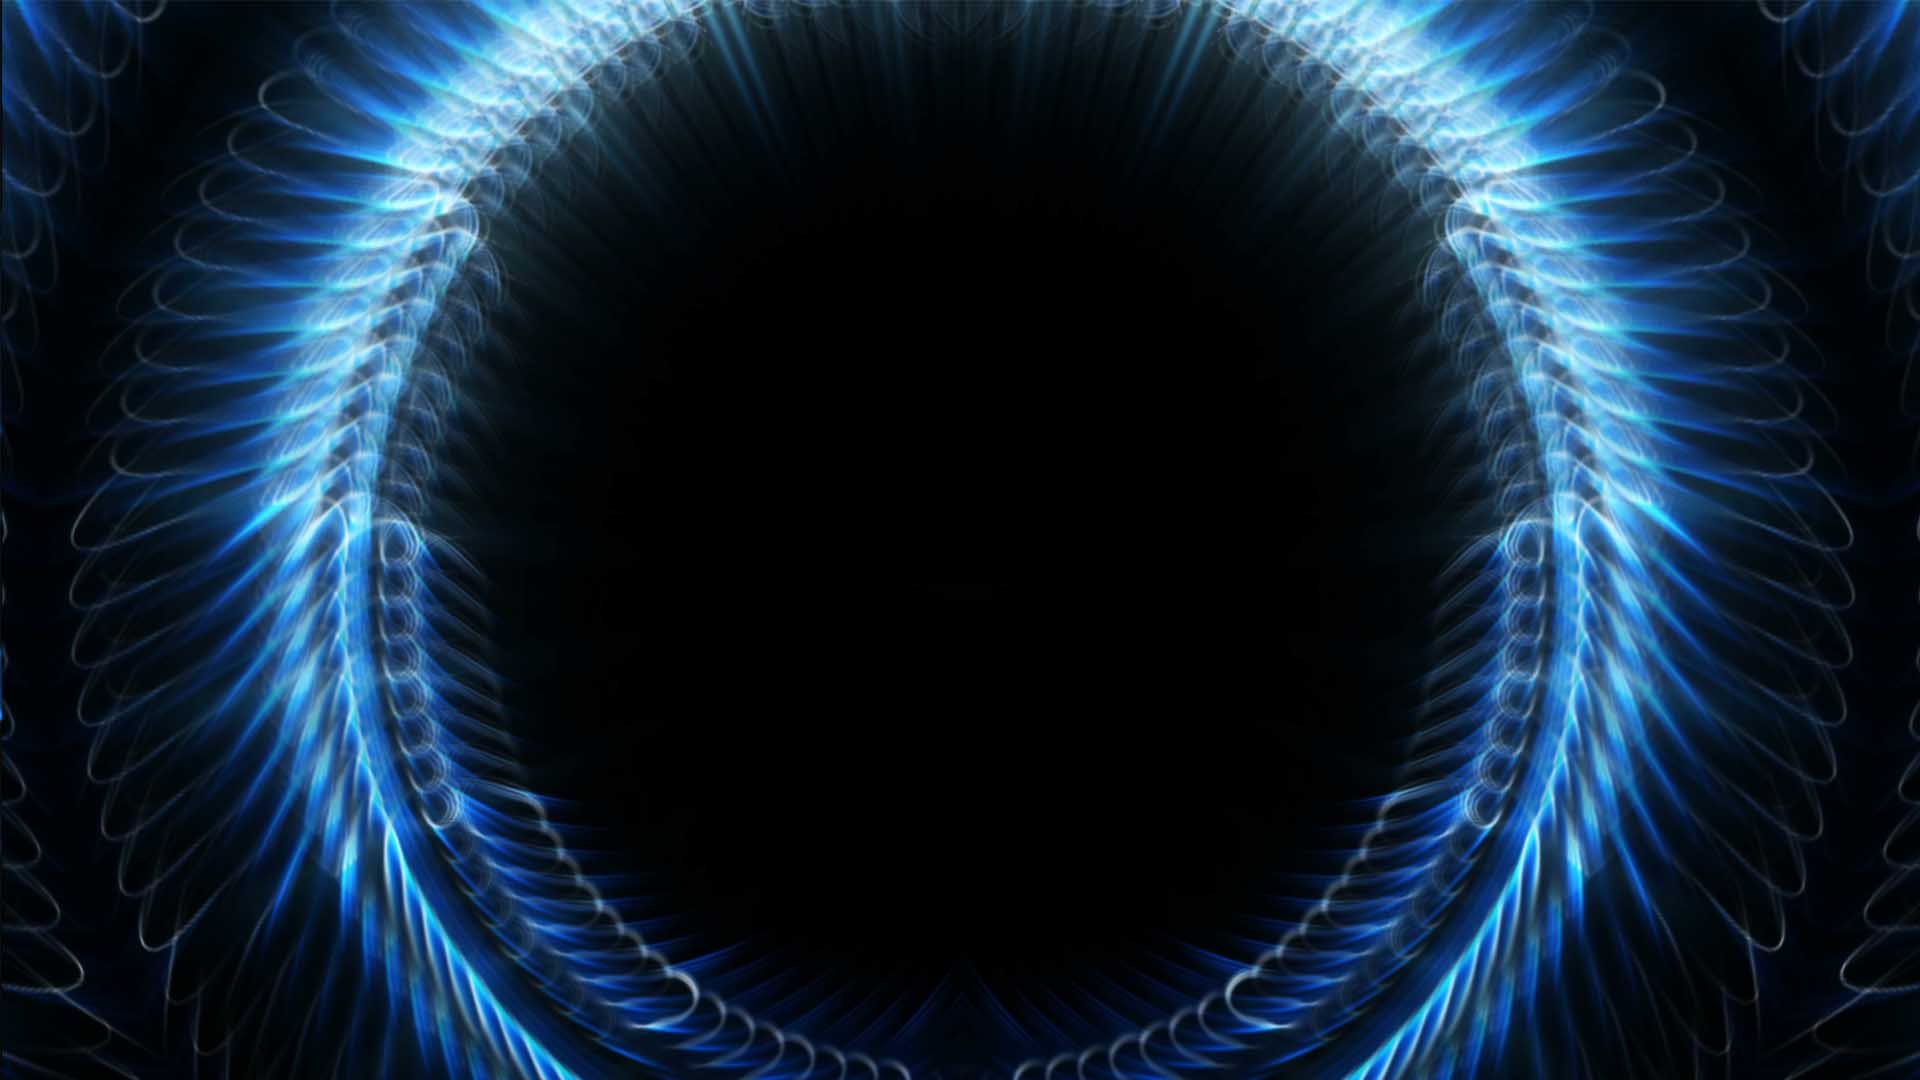 Blue lines Vj loop video wallpaper